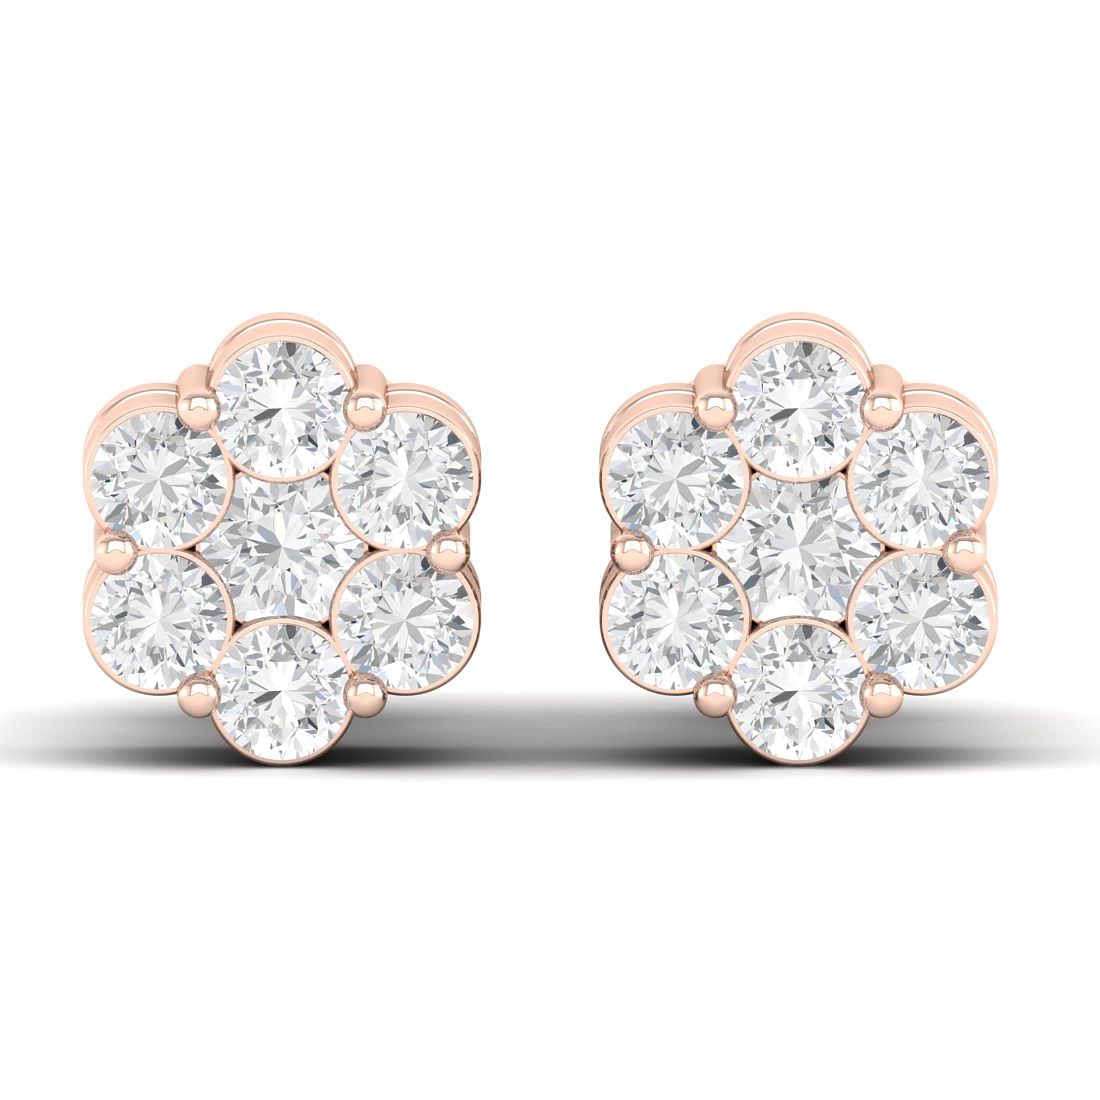 Buy Fuscia Diamond Earrings Online In India